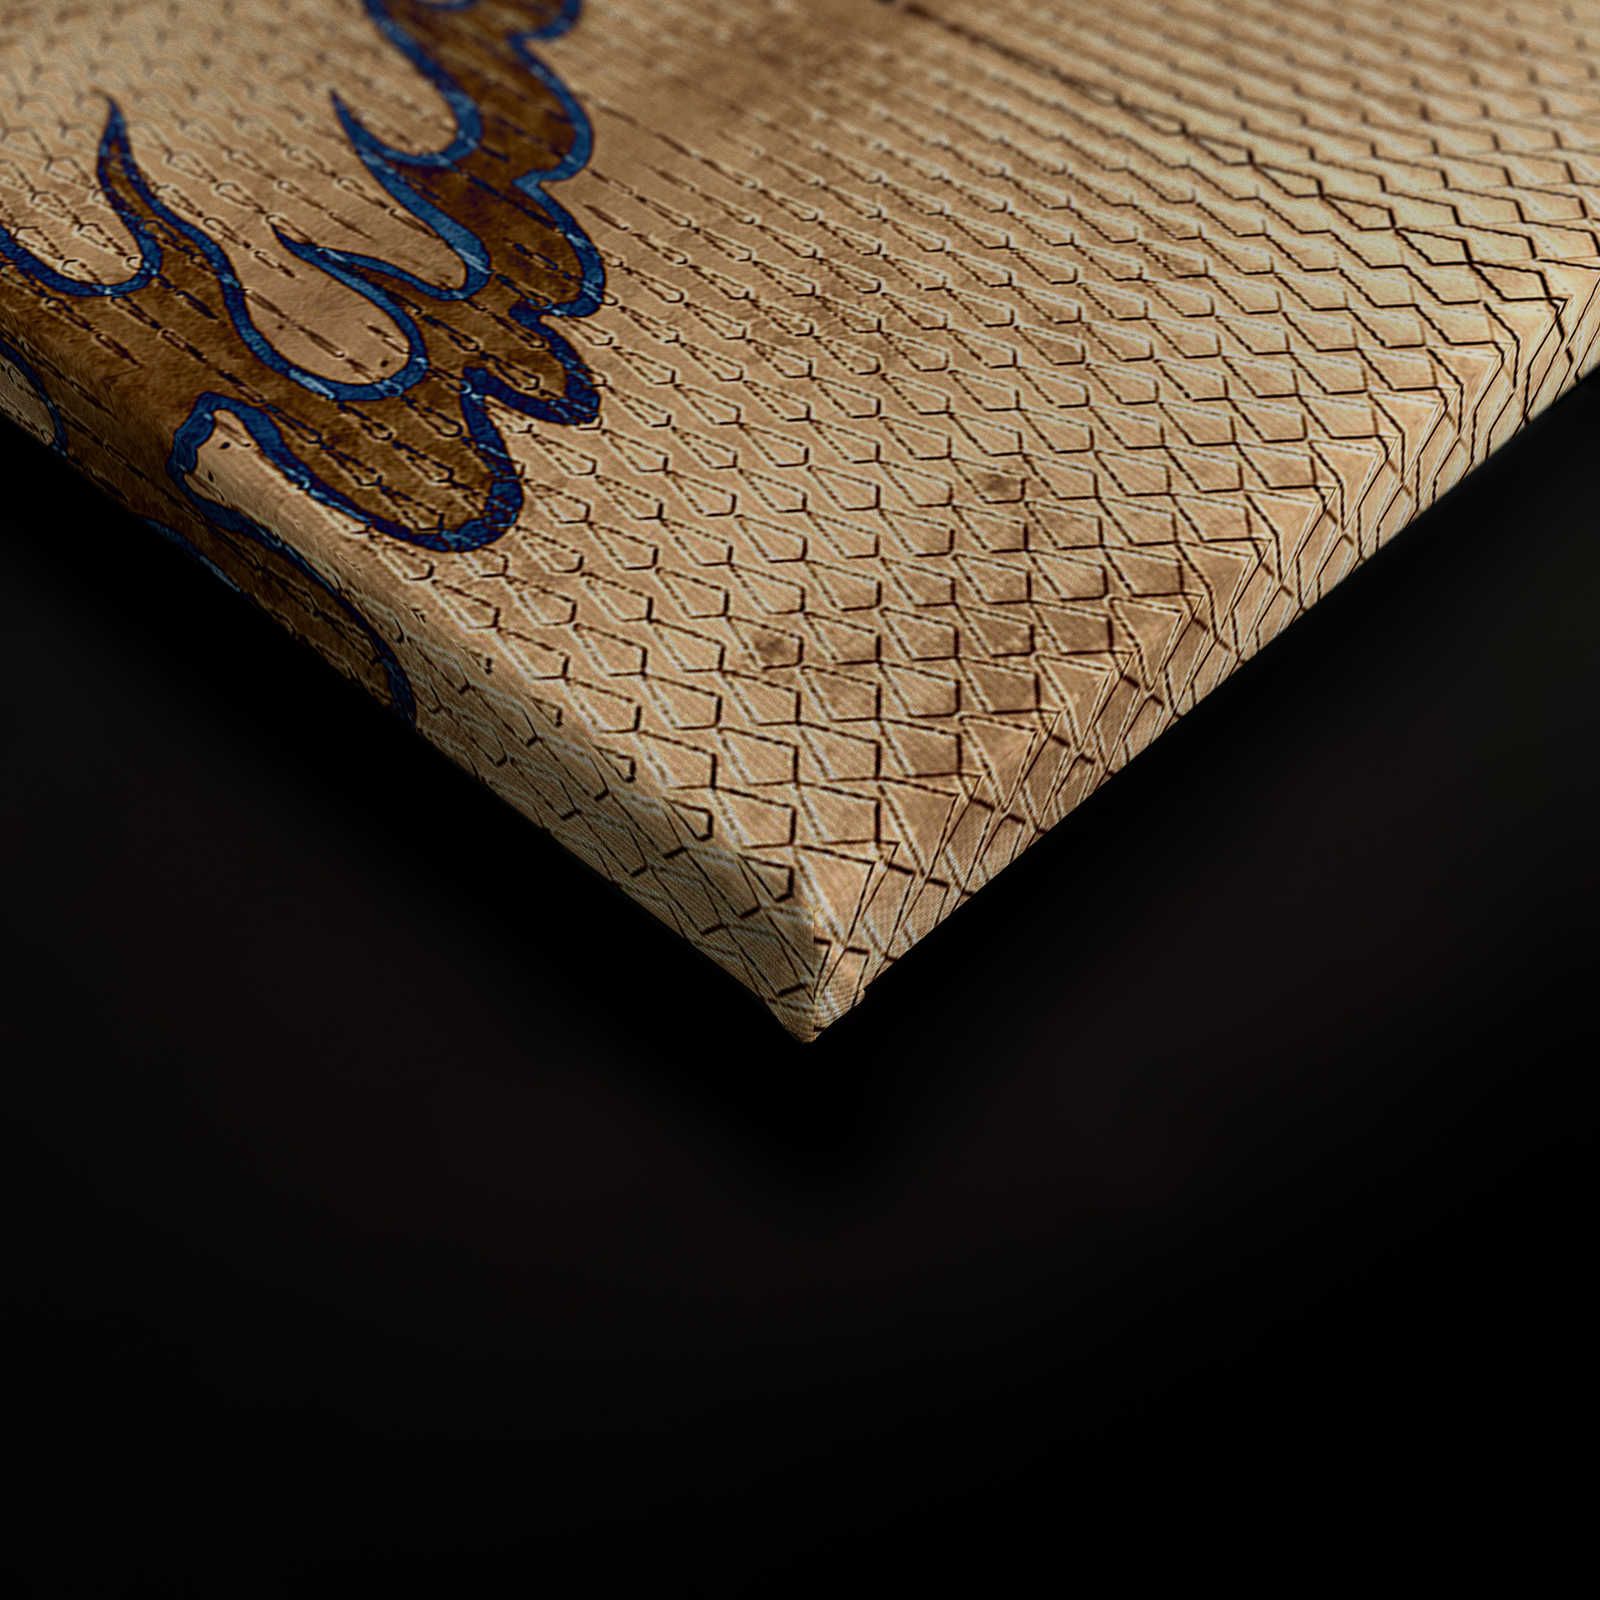             Shenzen 2 - Quadro su tela Drago d'oro in stile asiatico - 0,90 m x 0,60 m
        